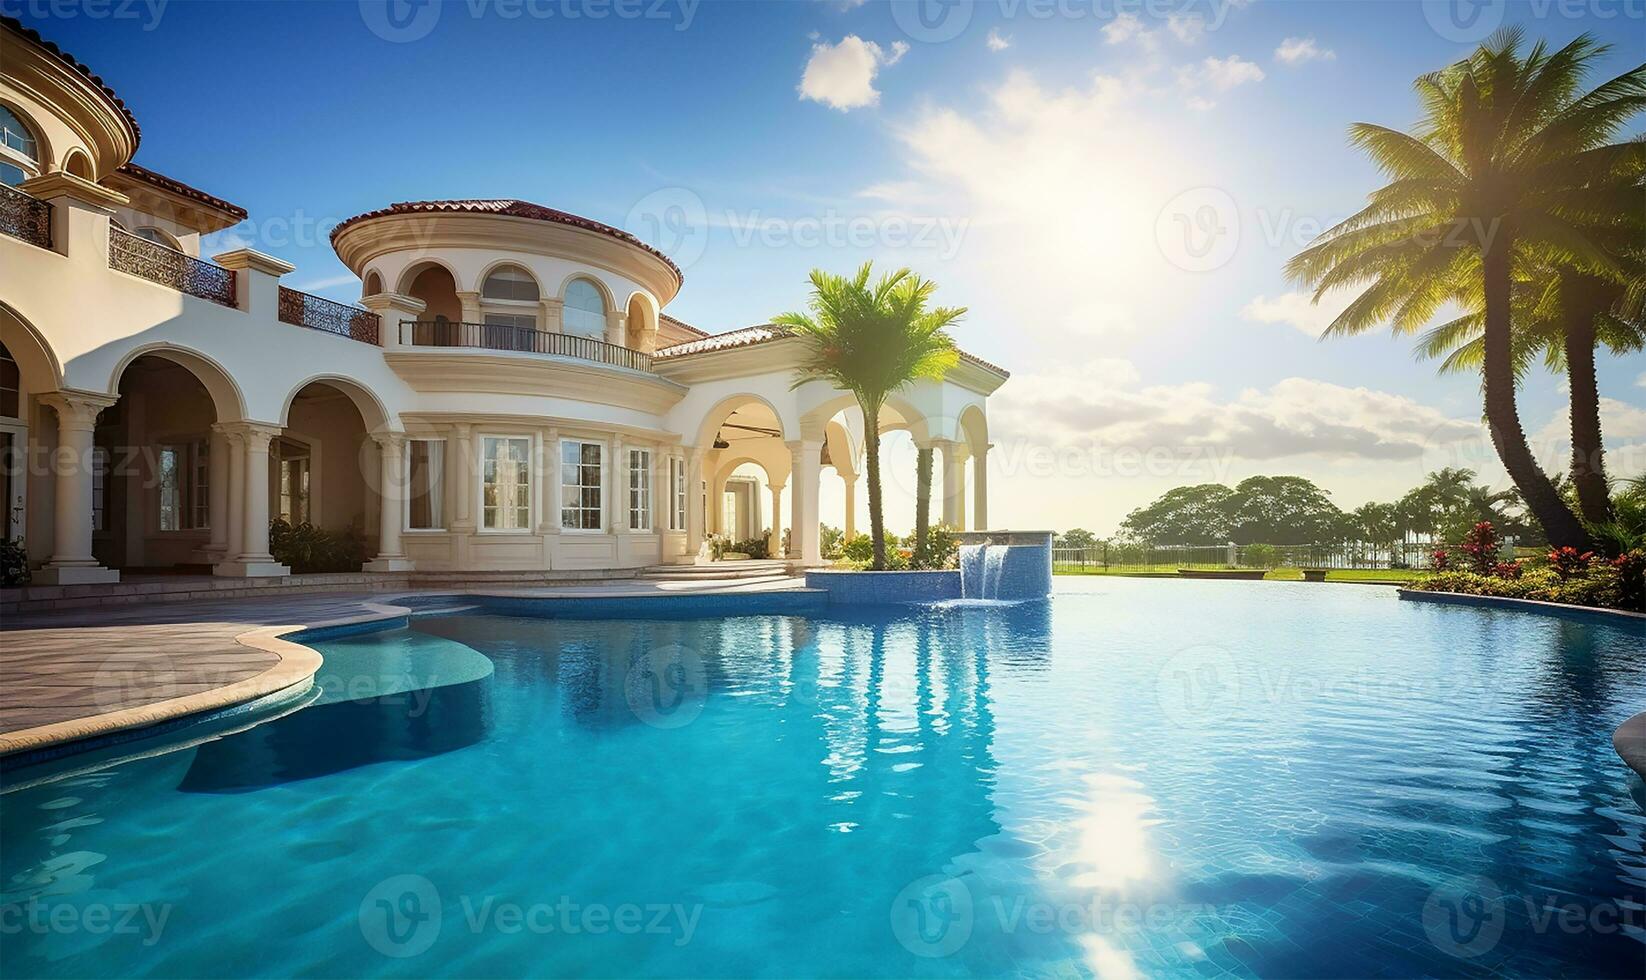 verbijsterend huis buitenkant badend in zonlicht, vergezeld door een enorm zwemmen zwembad dat glinstert onder de Doorzichtig blauw lucht. ai gegenereerd foto